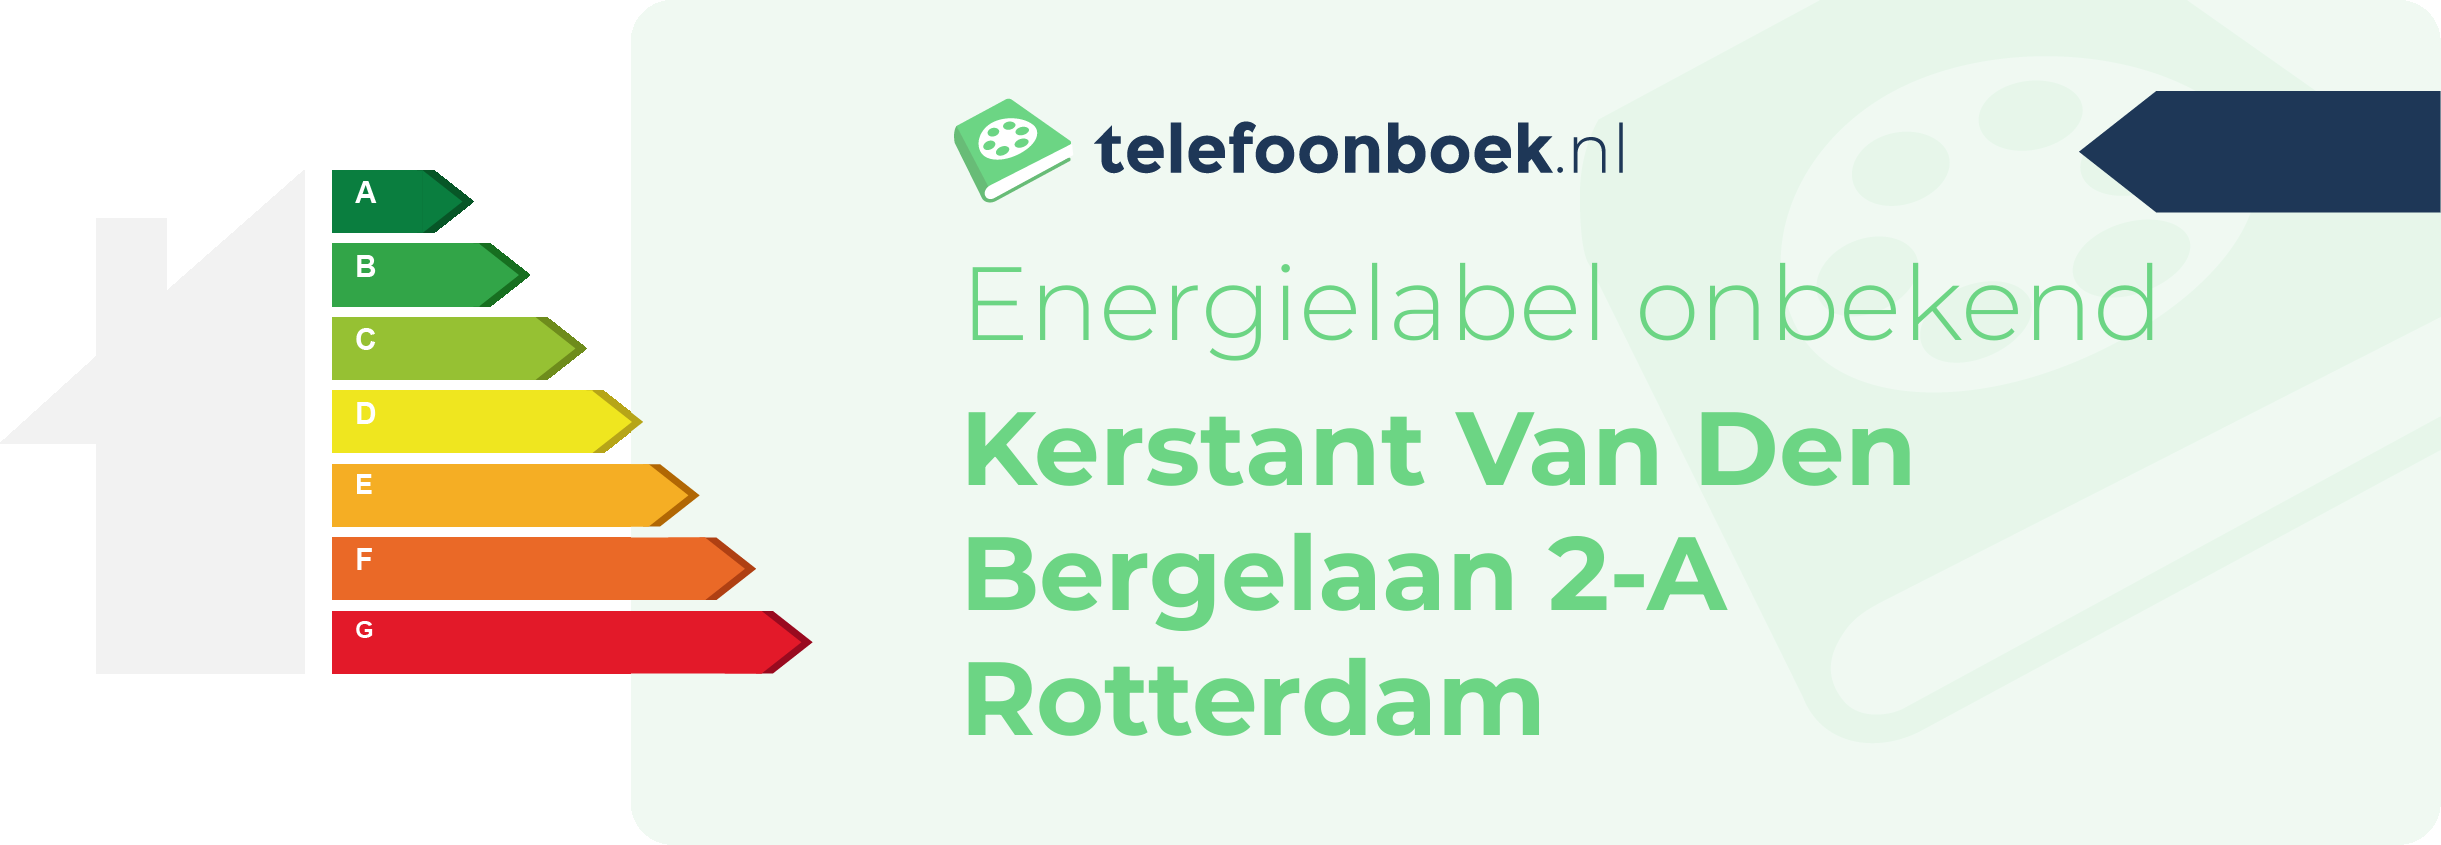 Energielabel Kerstant Van Den Bergelaan 2-A Rotterdam